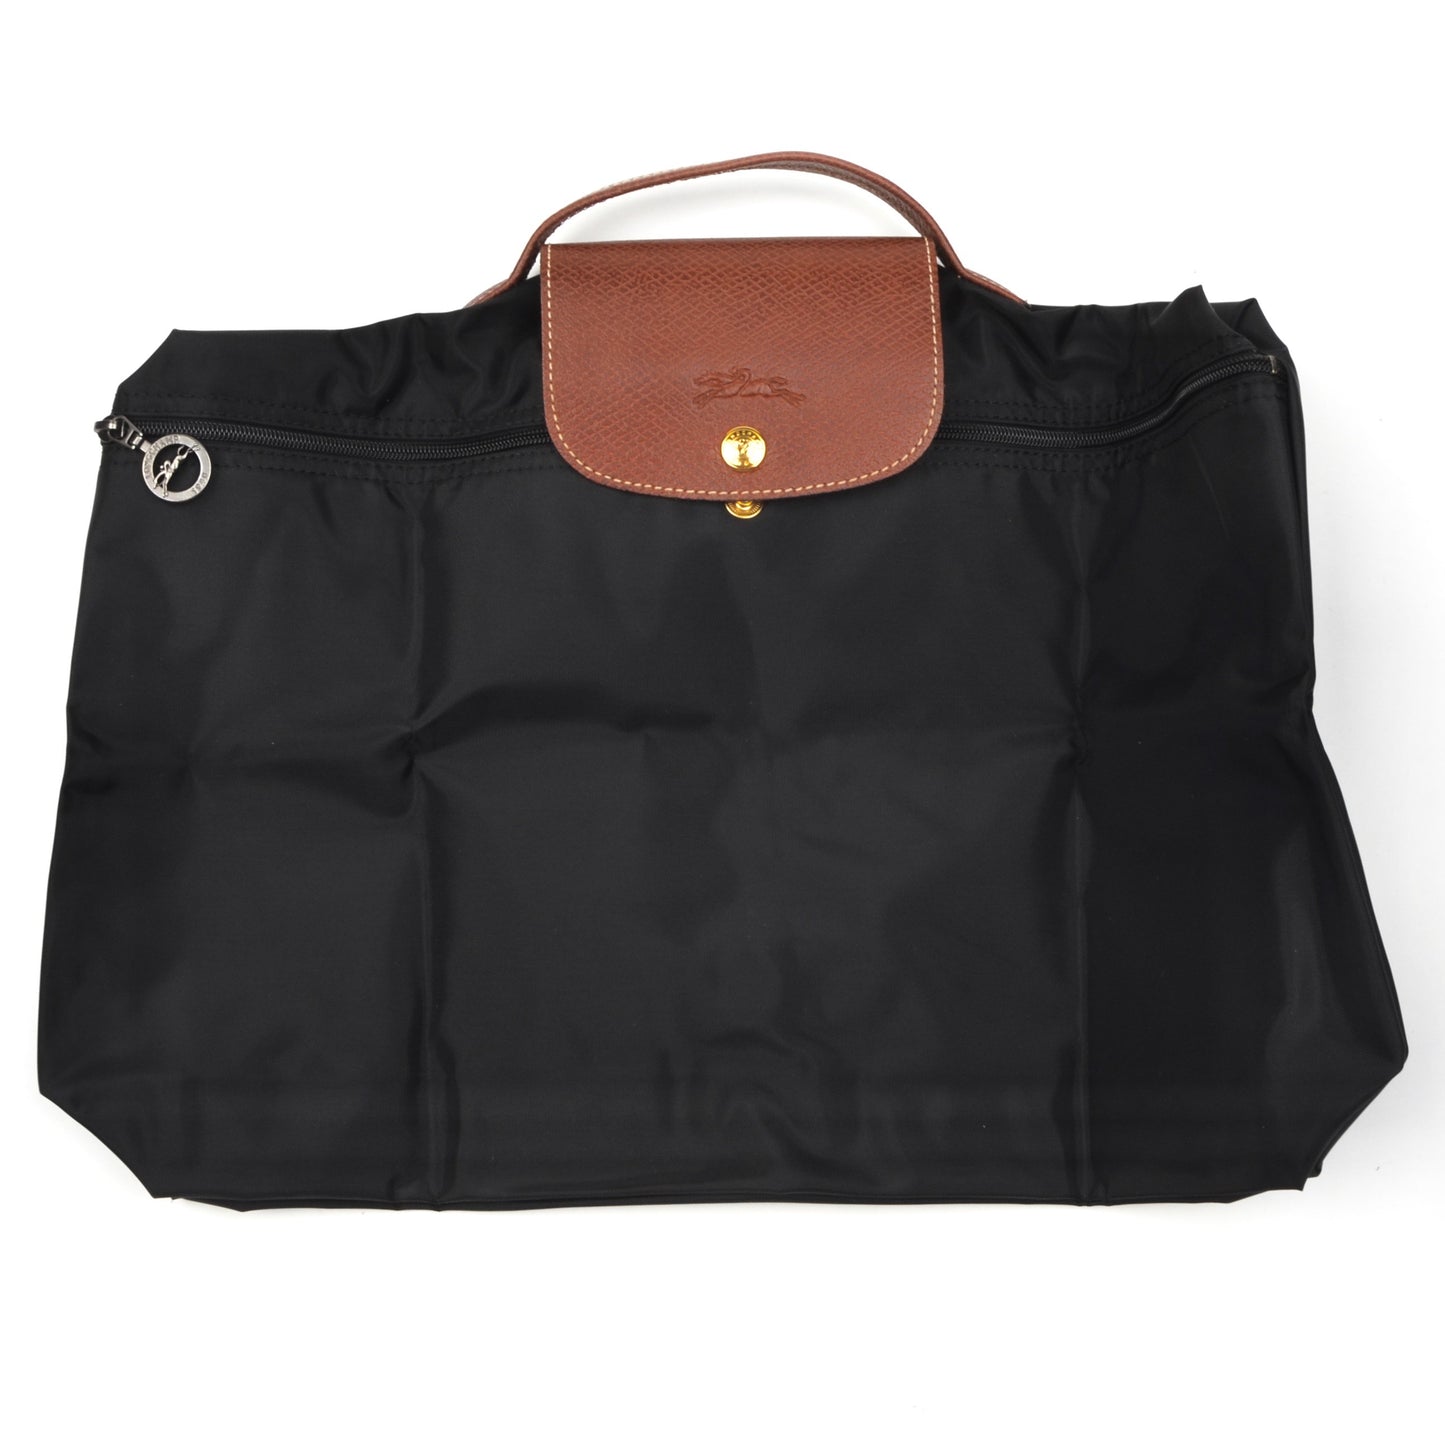 Longchamp Paris Les Pliage Bag "Docs" - Black